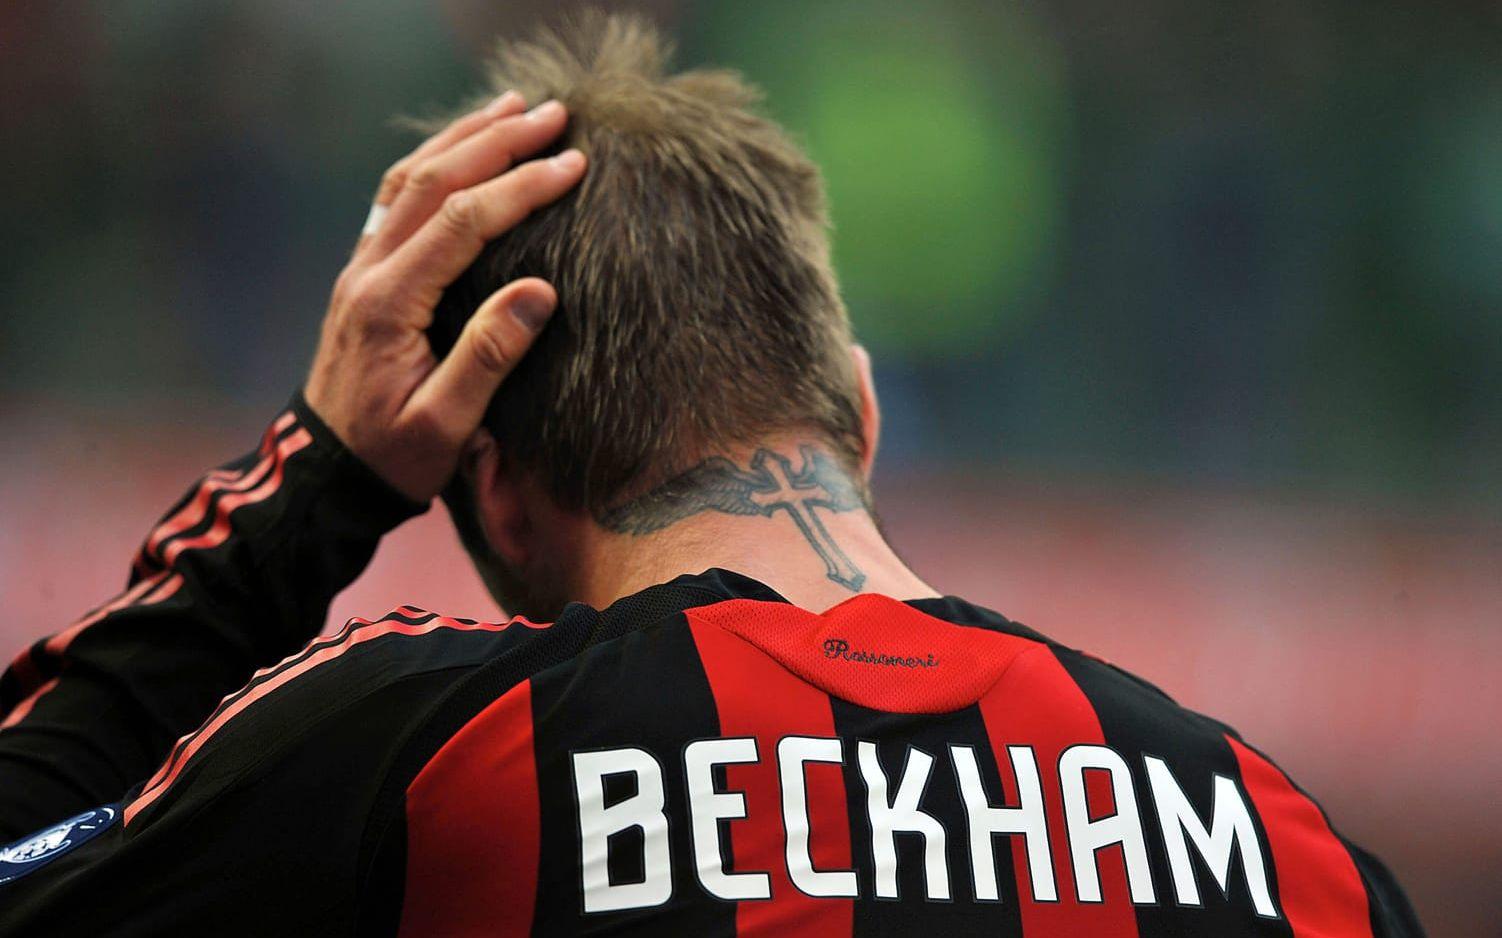 David Beckham har även en tatuering över ryggen/nacken, som syns här. Bild: Bildbyrån.